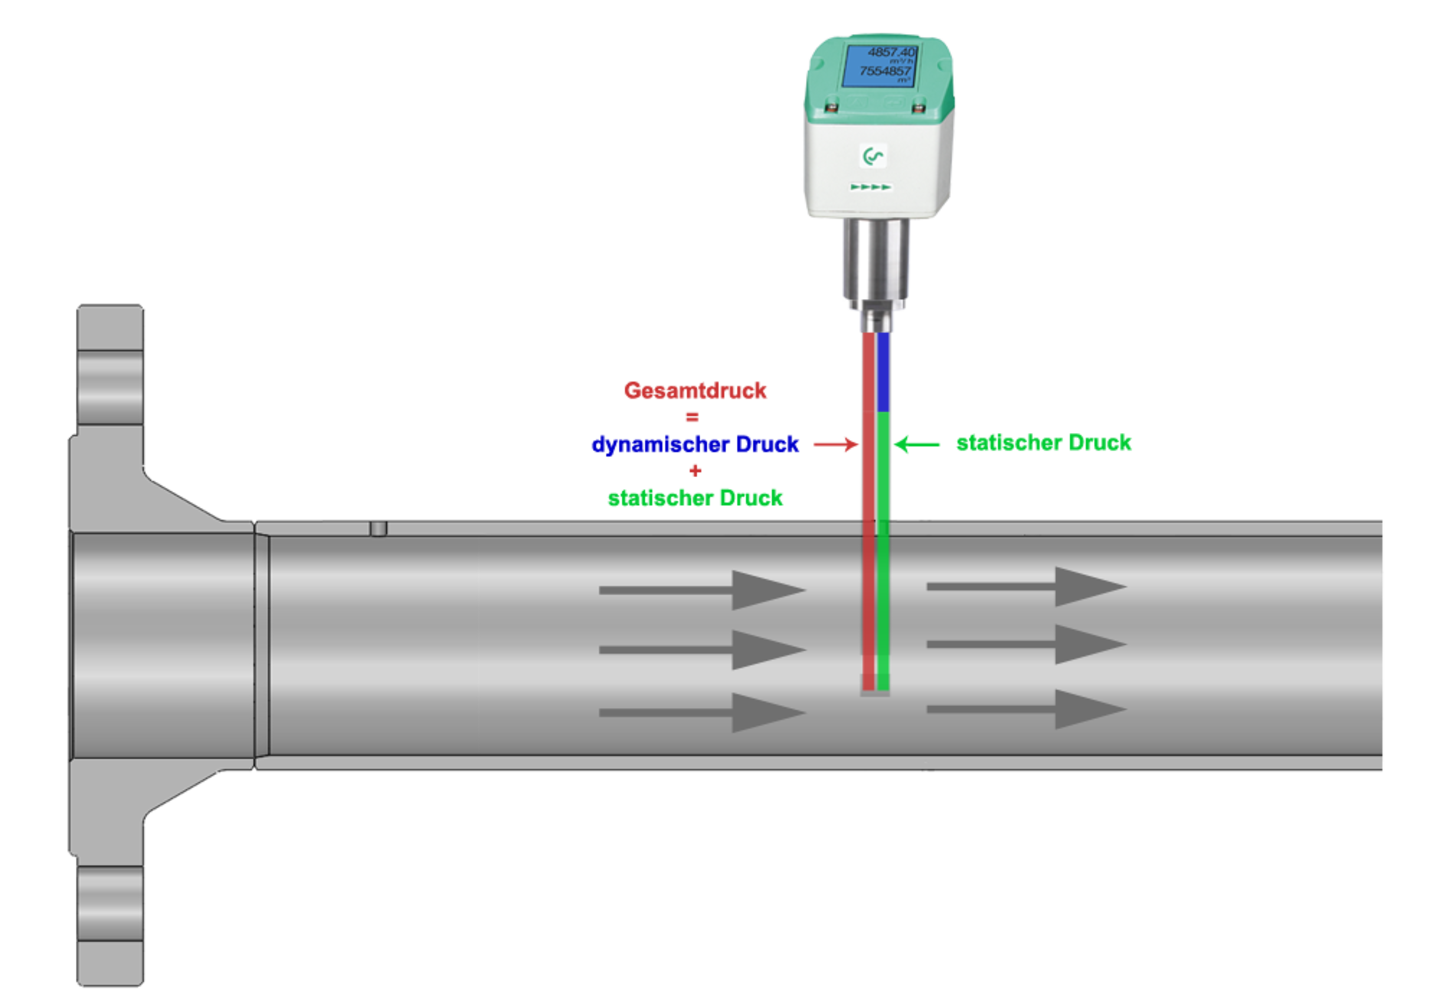 Durch den integrierten, präzisen Differenzdrucksensor wird der Differenzdruck/Staudruck an der Sensorspitze gemessen.